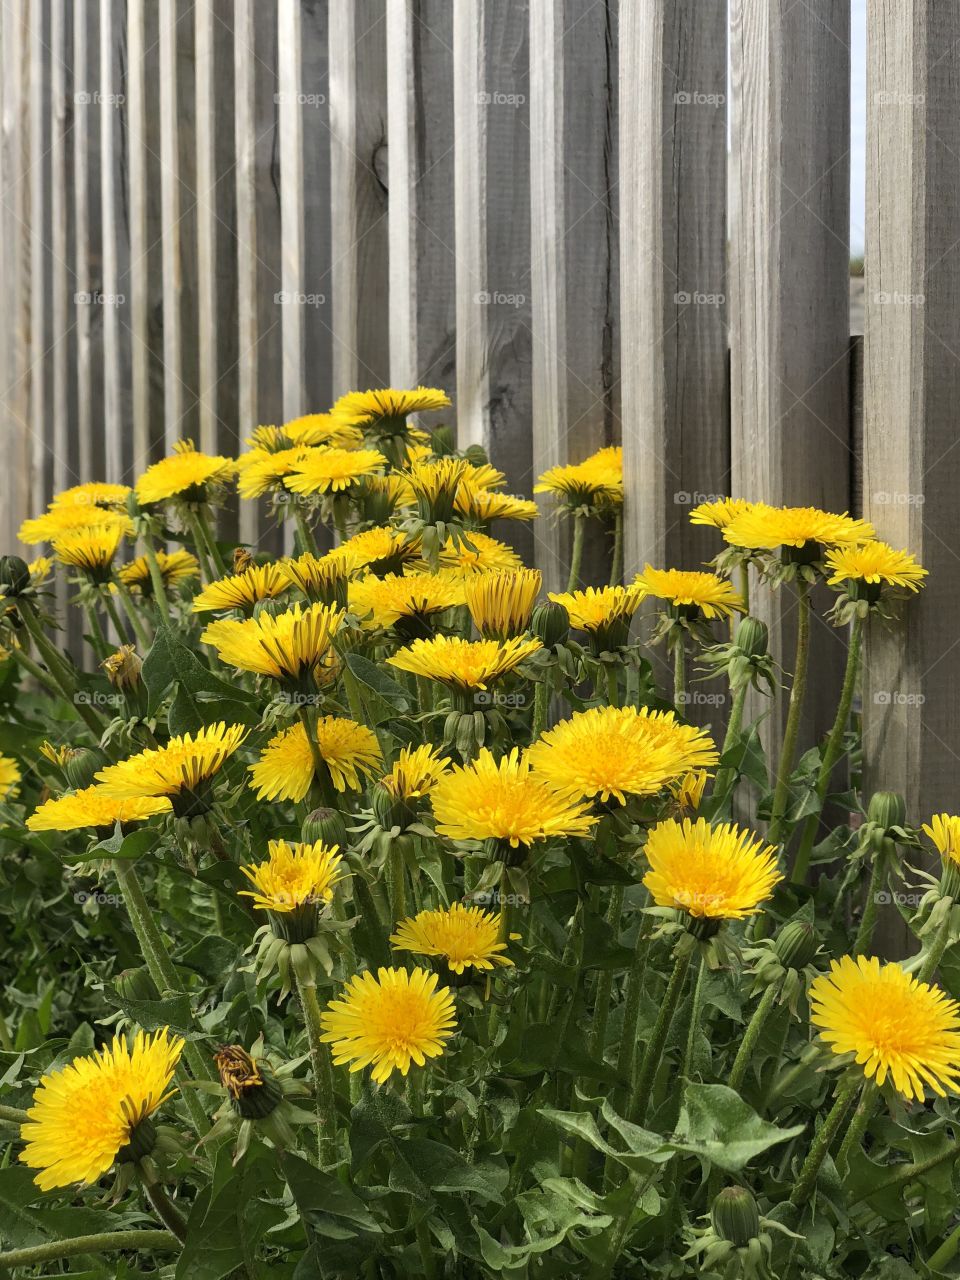 dandelion or weeds